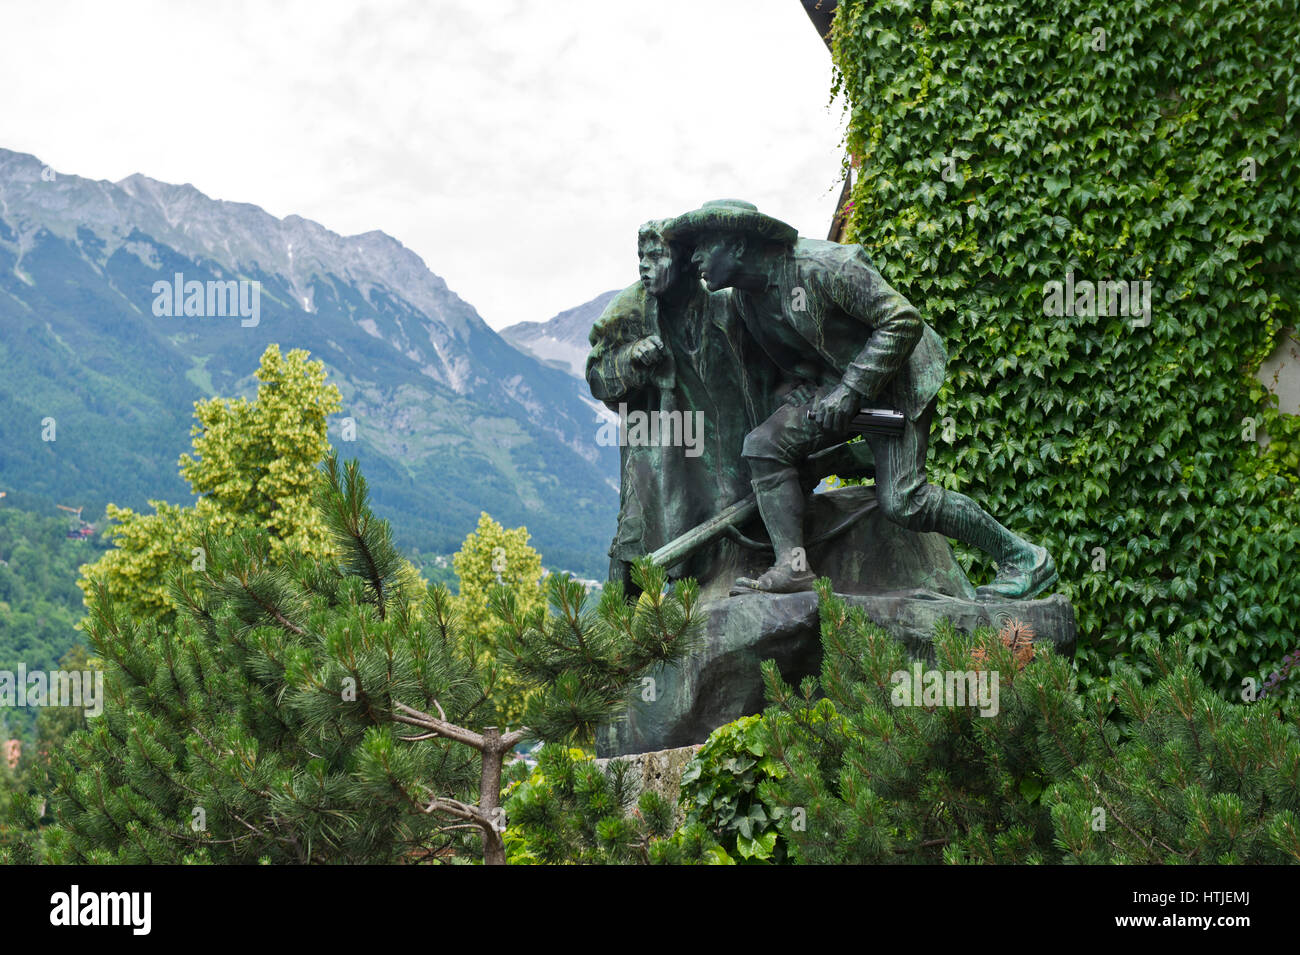 Estatuas de bronce de dos hombres conocidos como "Monumento anon 9' creado por Christian Charola 1904, Innsbruck, Tirol, Austria Foto de stock